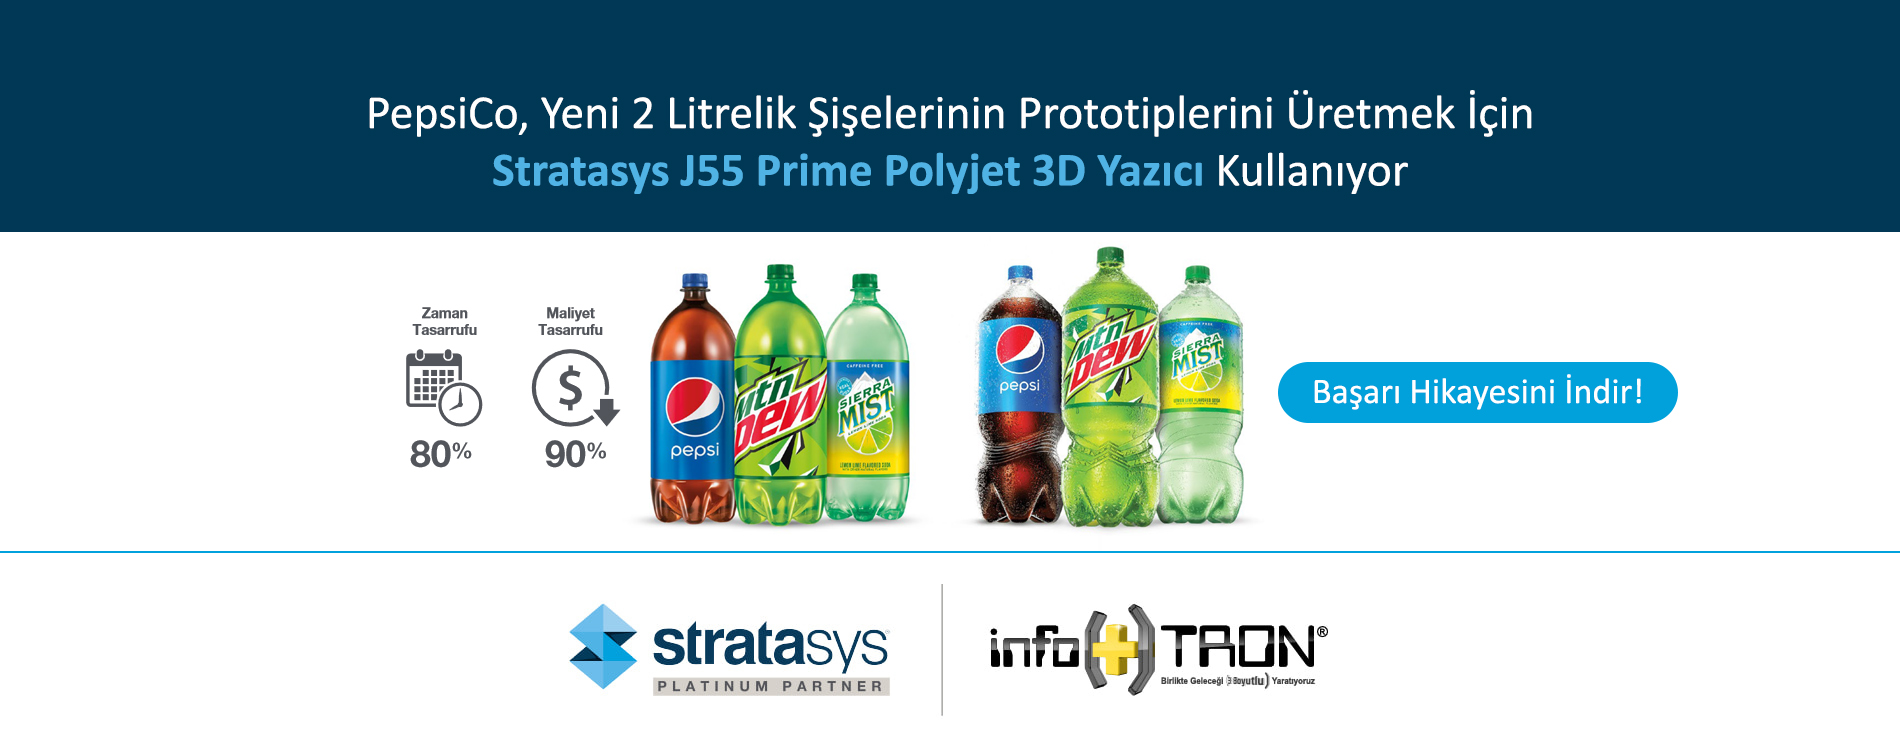 PepsiCo, Yeni 2 Litrelik Şişelerinin Prototiplerini Üretmek İçin Stratasys J55 Prime Polyjet 3D Yazıcı Kullanıyor